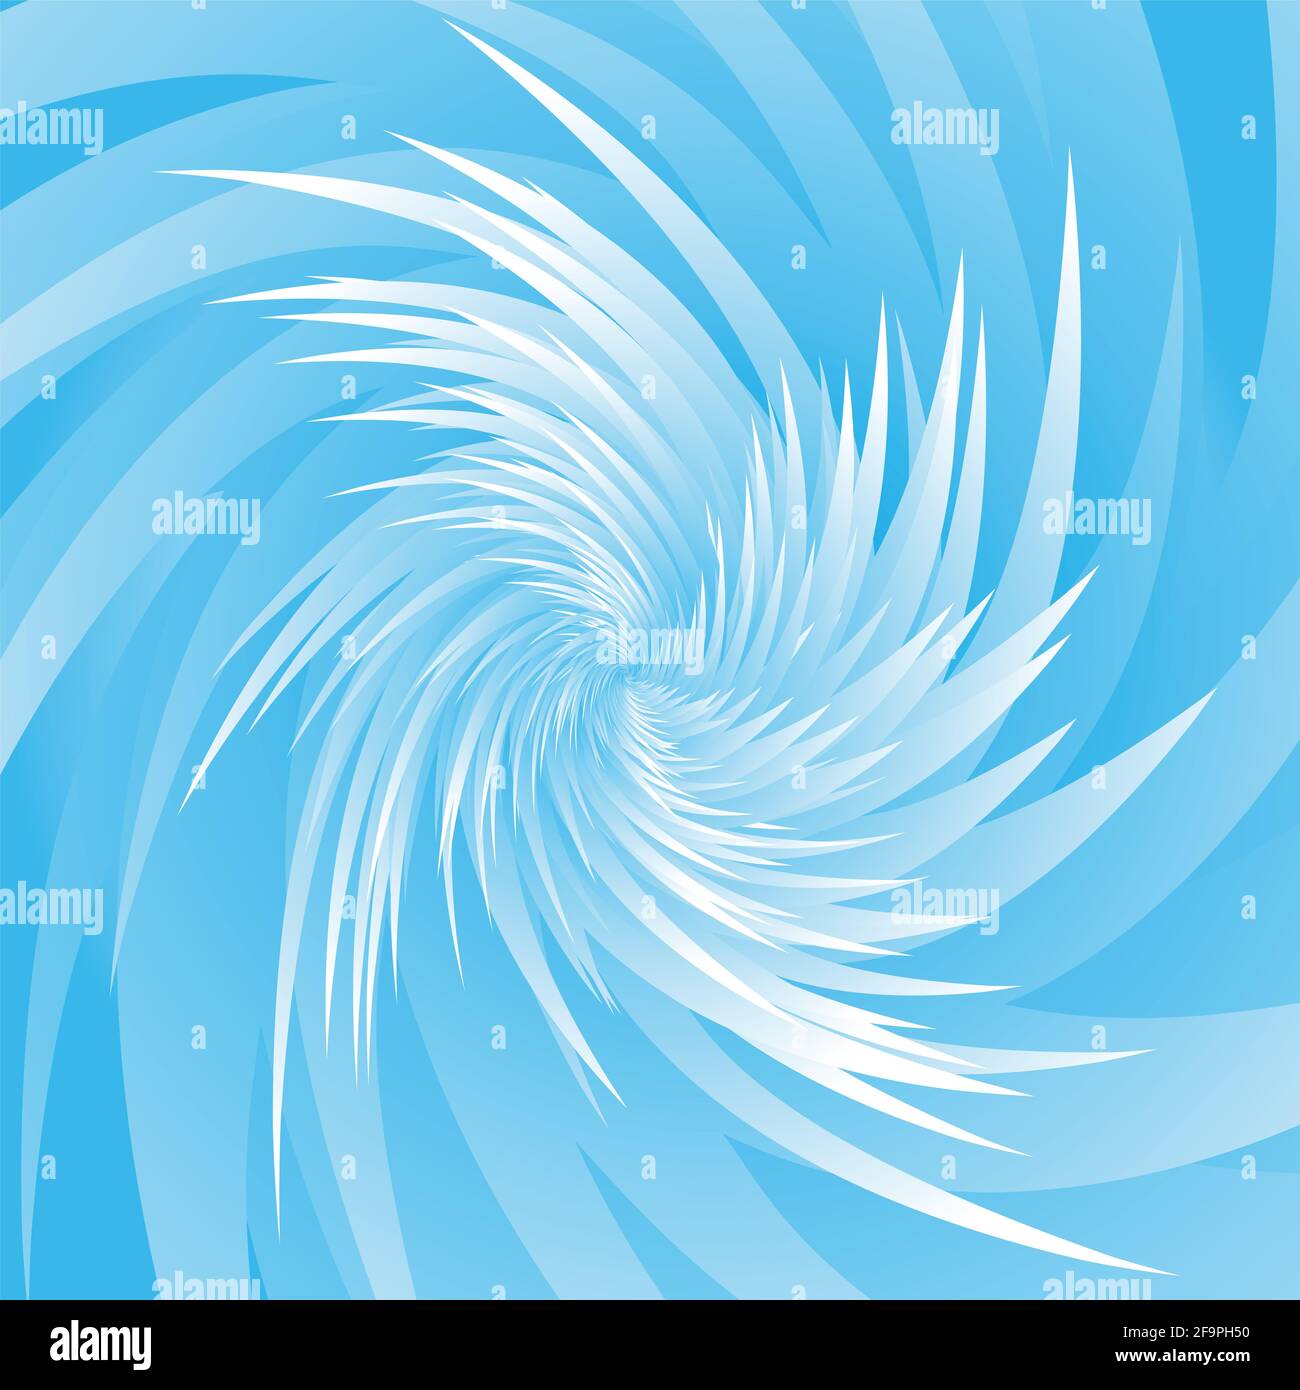 Spirale di spine di ghiaccio, modello di picco surgelato blu e bianco, spirale invernale selvaggia esplosiva. Foto Stock